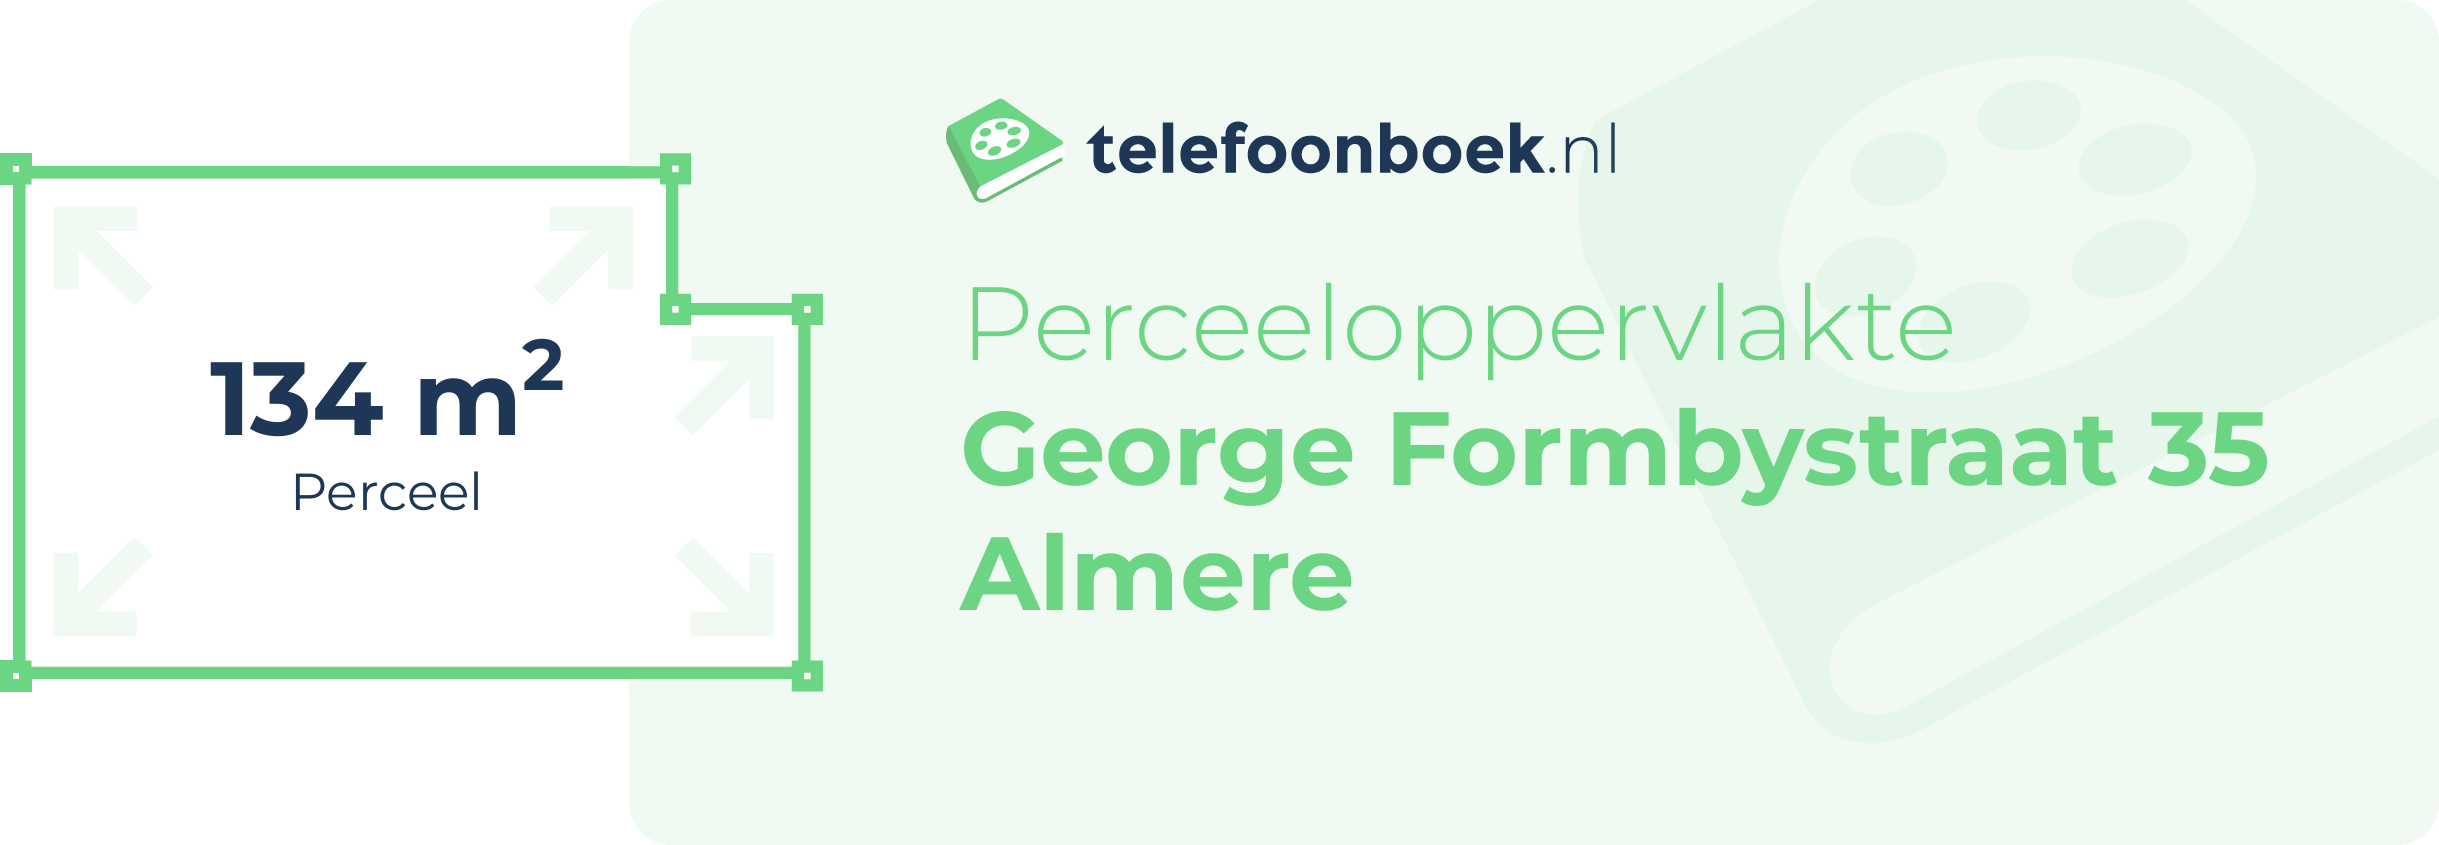 Perceeloppervlakte George Formbystraat 35 Almere